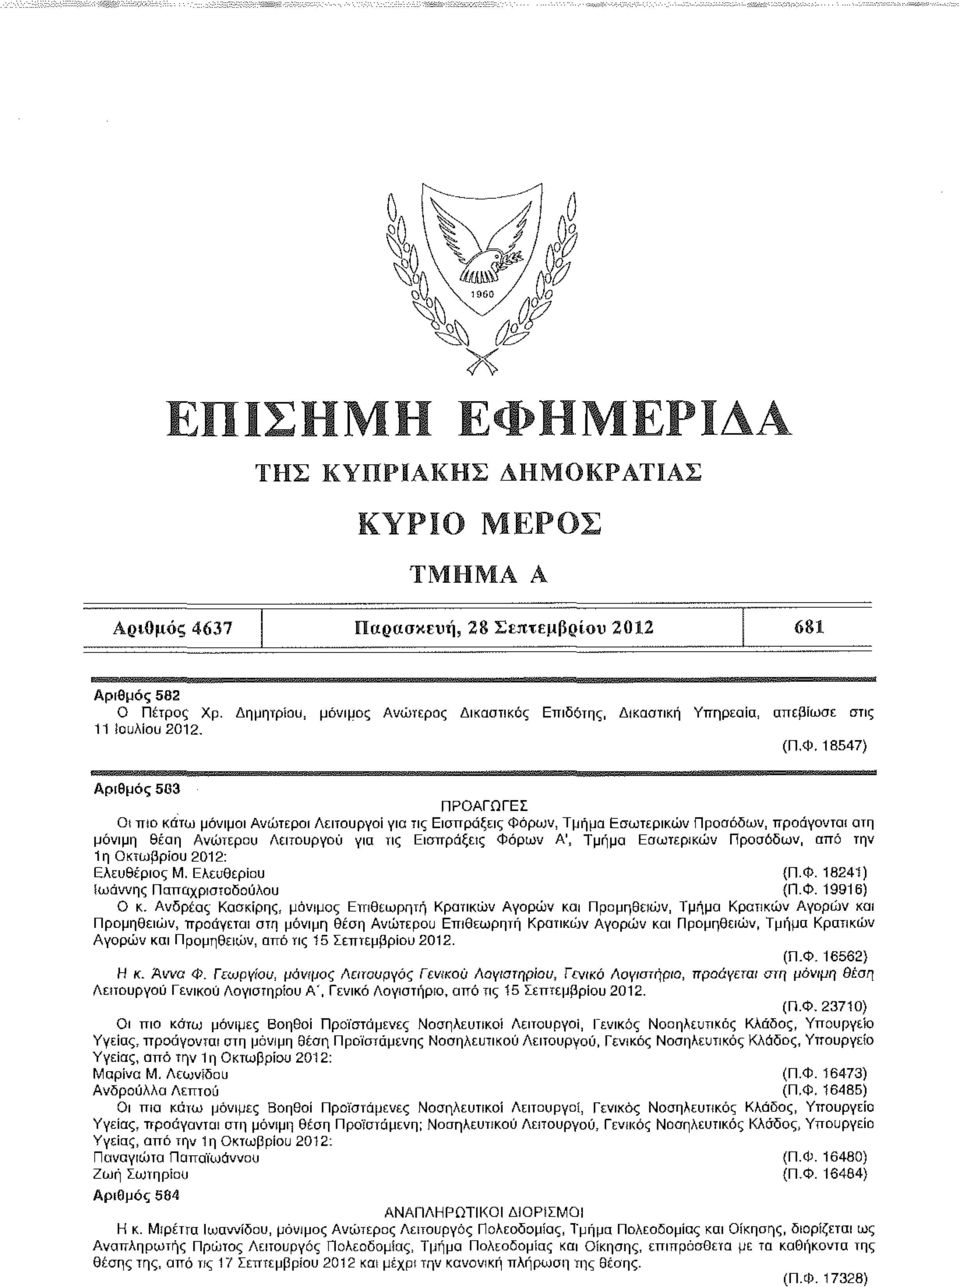 Τμήμα Εσωτερικών Προσόδων, από την 1η Οκτωβρίου 2012: Ελευθέριος Μ. Ελευθερίου (Π.Φ. 18241) ίωάννης Παπαχρισιοδούλου {Π.Φ. 19916) Ο κ.